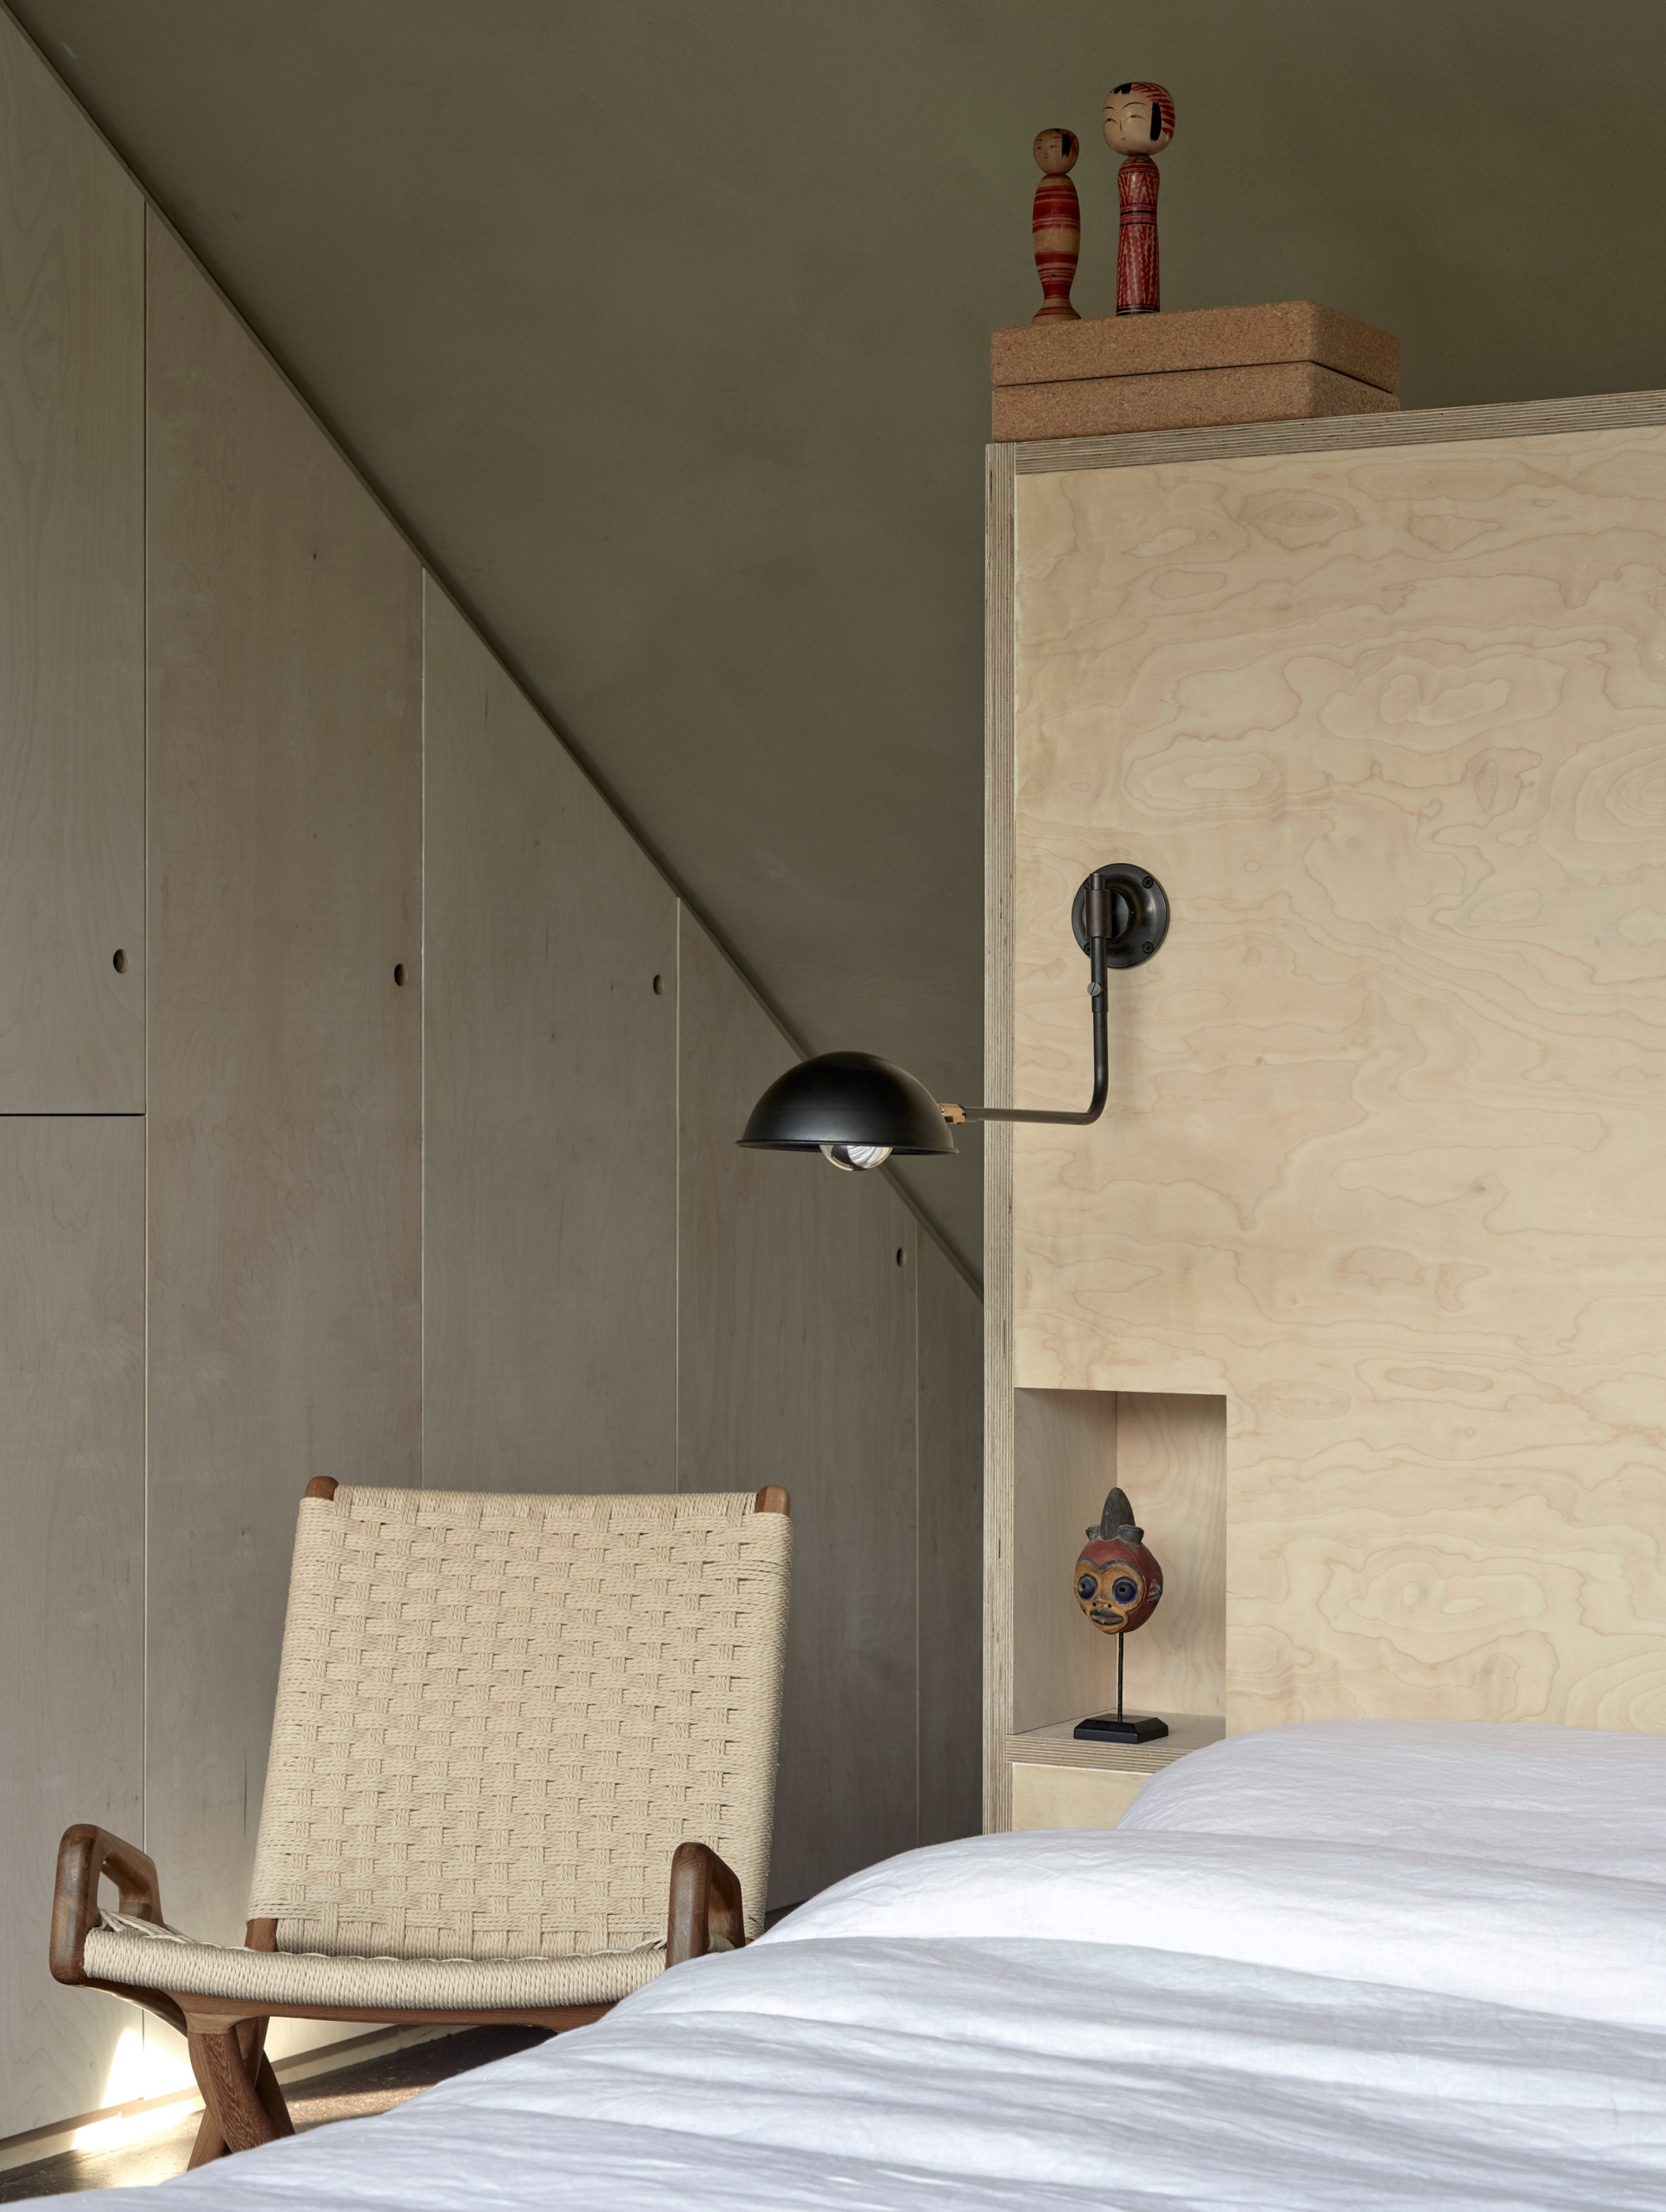 Hệ thống tủ lưu trữ bằng gỗ không tay nắm tạo nên sự đơn giản, gọn gàng cho căn phòng. Đầu giường tích hợp những hộc nhỏ để đựng những món đồ trang trí.